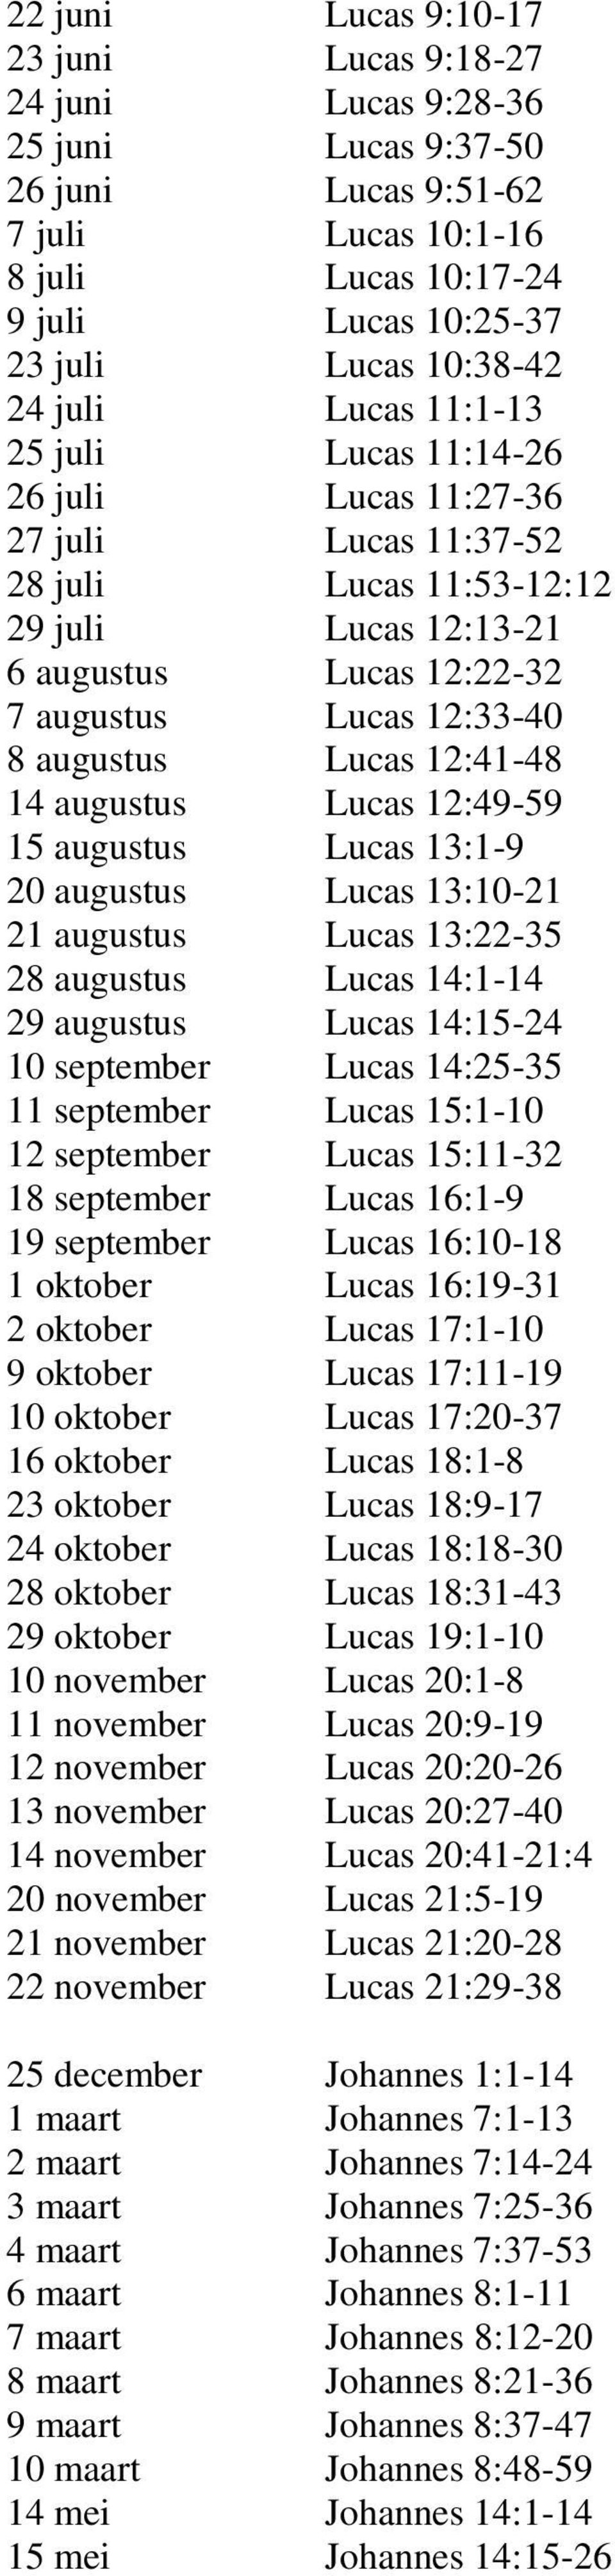 augustus Lucas 12:41-48 14 augustus Lucas 12:49-59 15 augustus Lucas 13:1-9 20 augustus Lucas 13:10-21 21 augustus Lucas 13:22-35 28 augustus Lucas 14:1-14 29 augustus Lucas 14:15-24 10 september